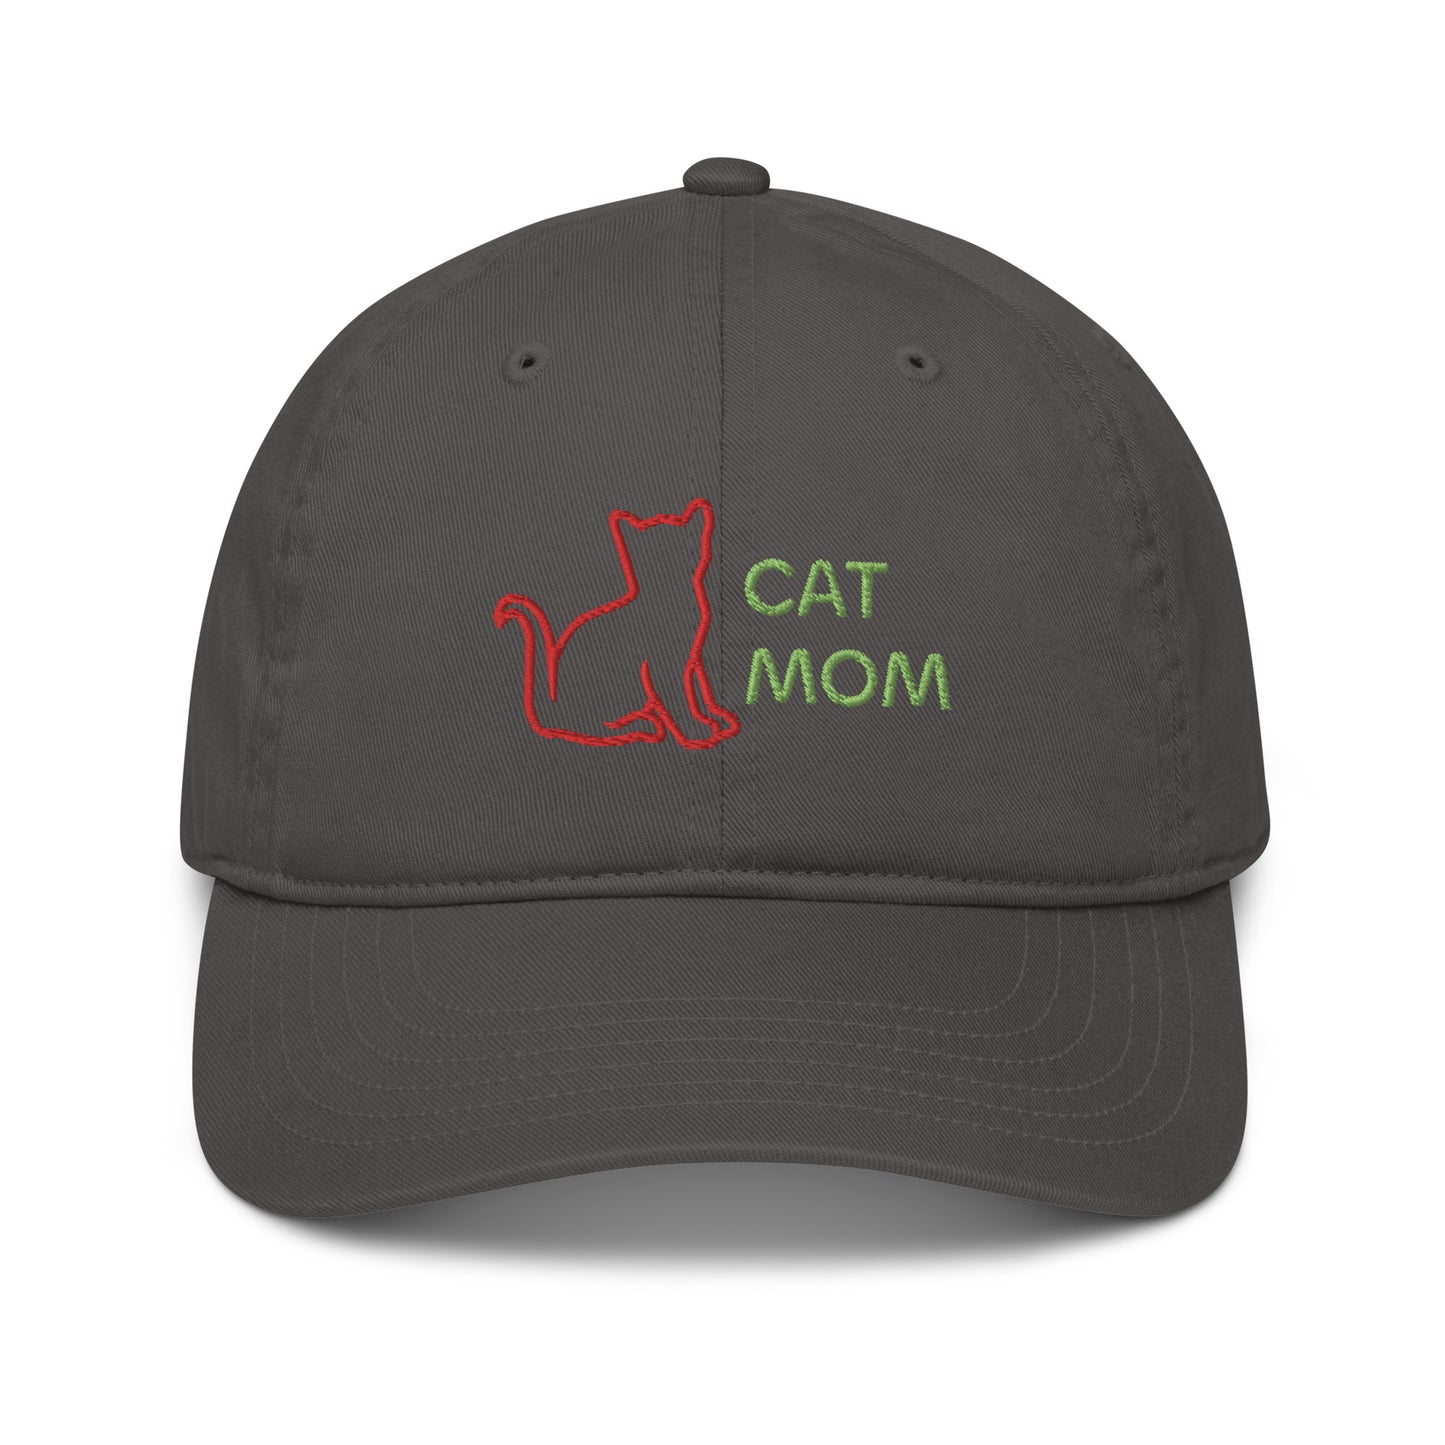 Organic dad hat with "Cat Mom" design